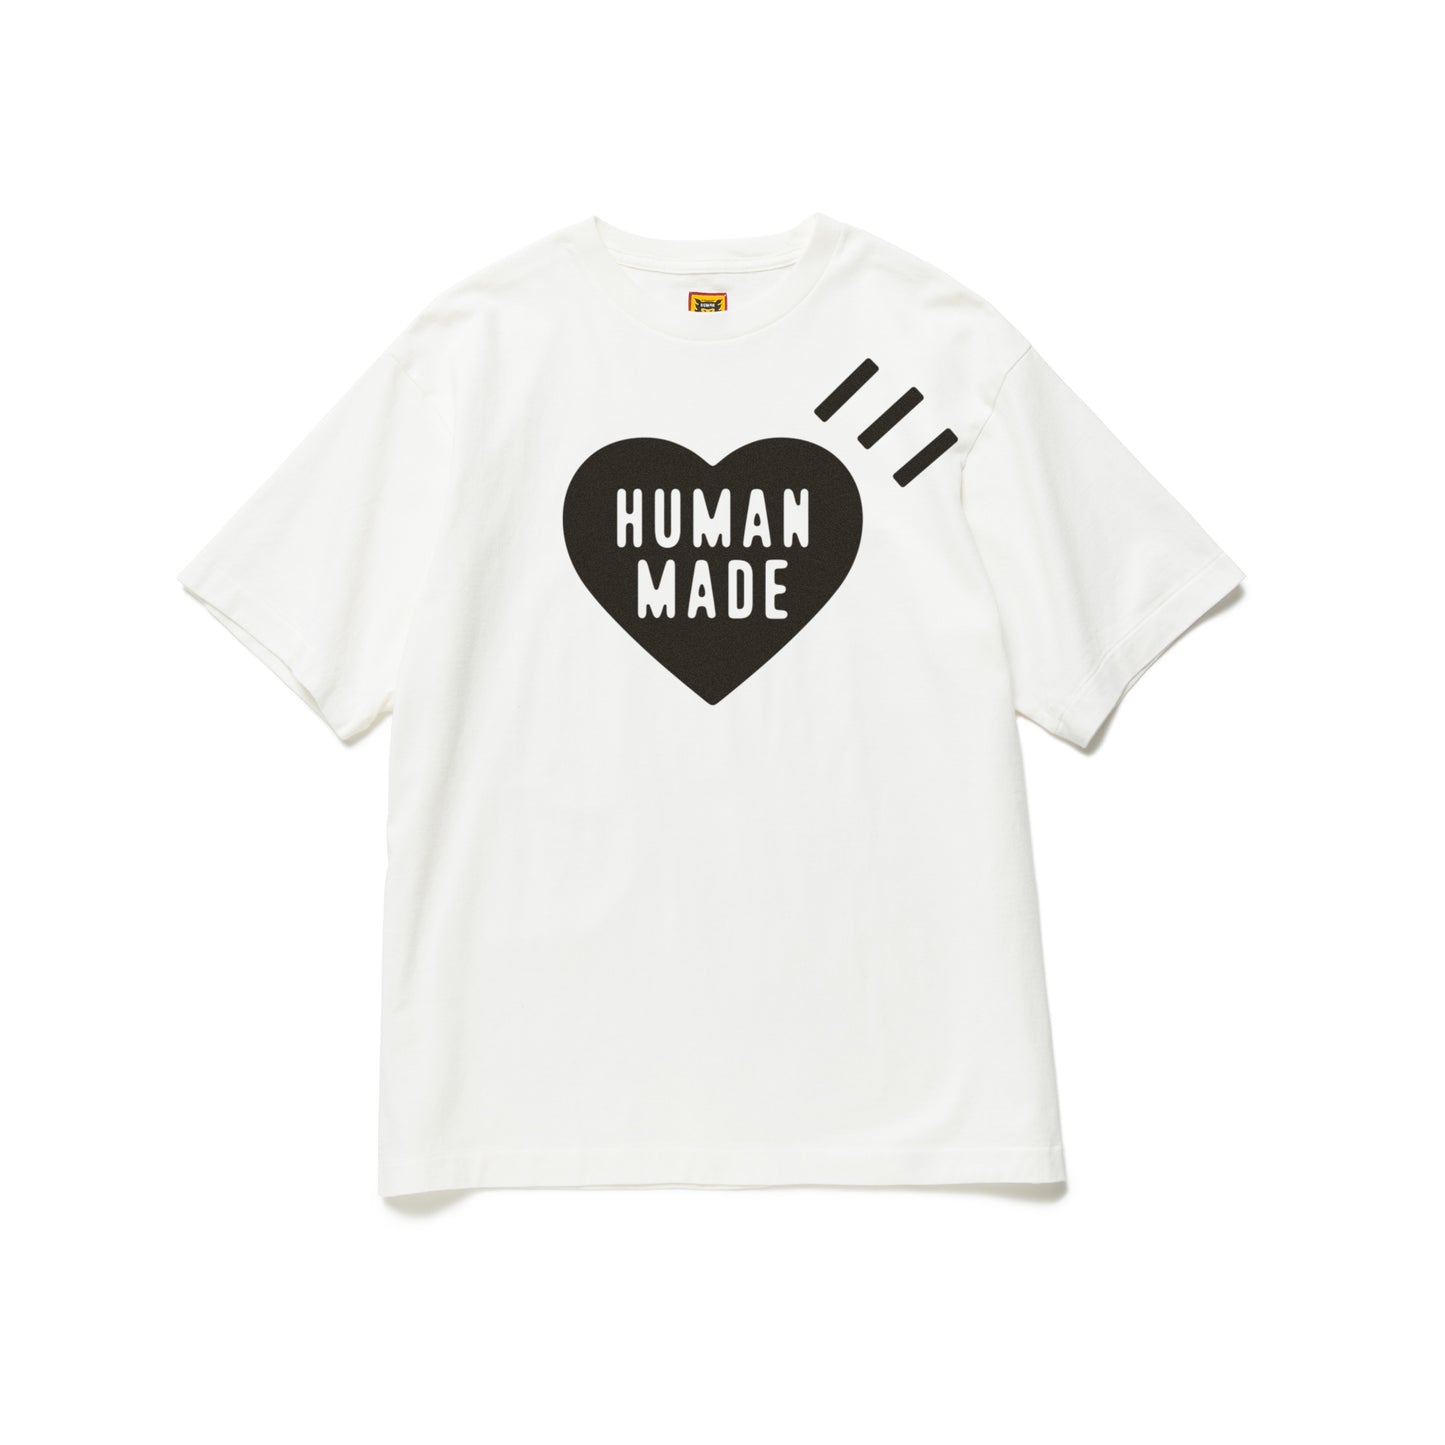 HUMAN MADE Tシャツ Sサイズ www.krzysztofbialy.com